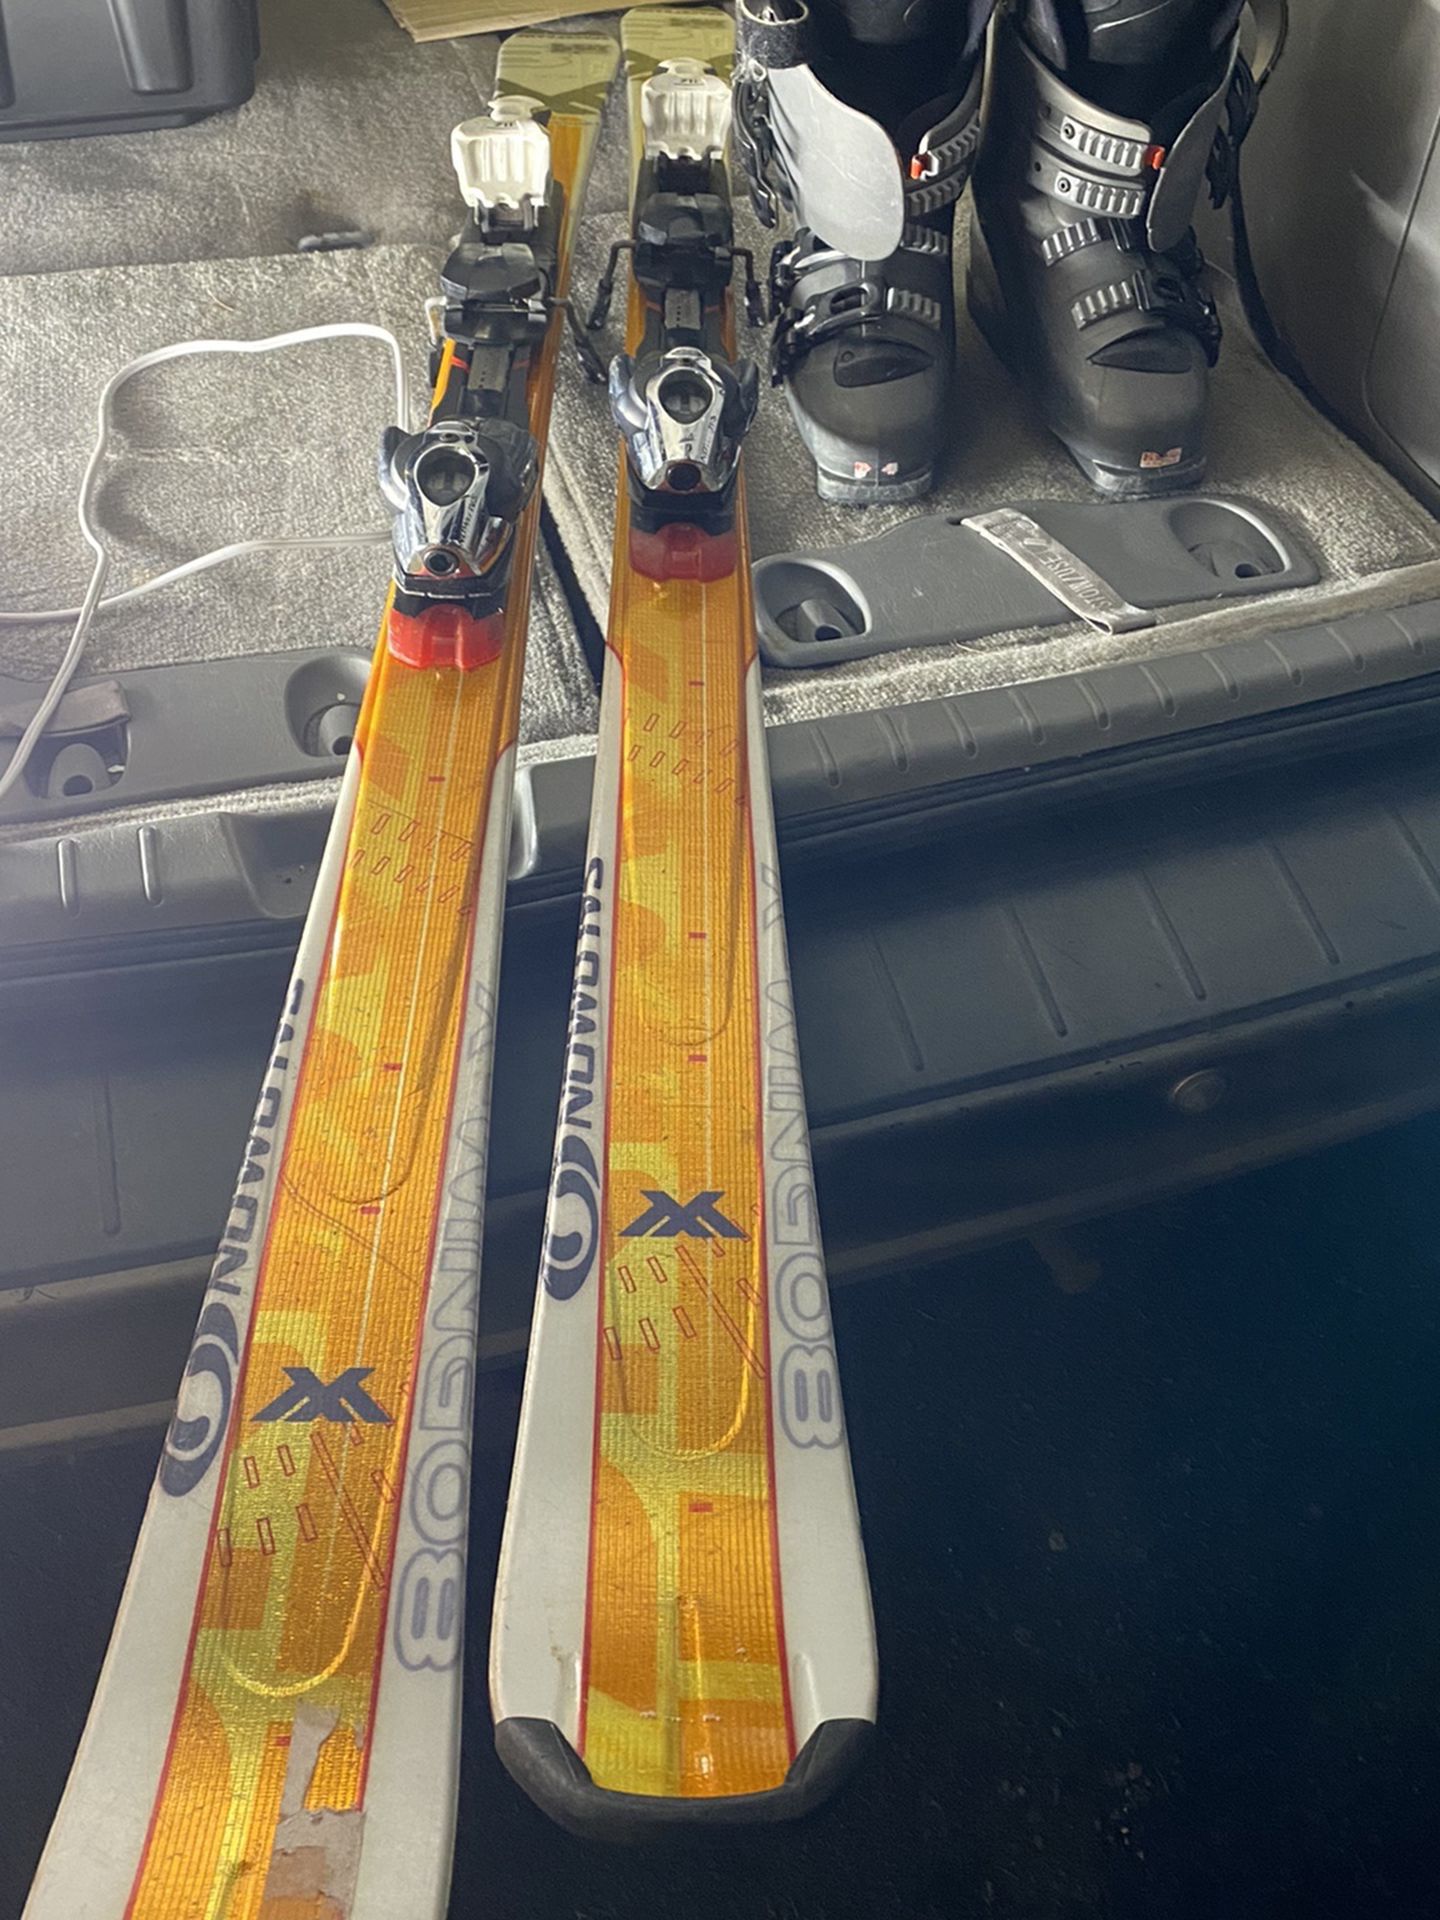 Salmon Skis 165cm, Ski Boots Size 25-25.5